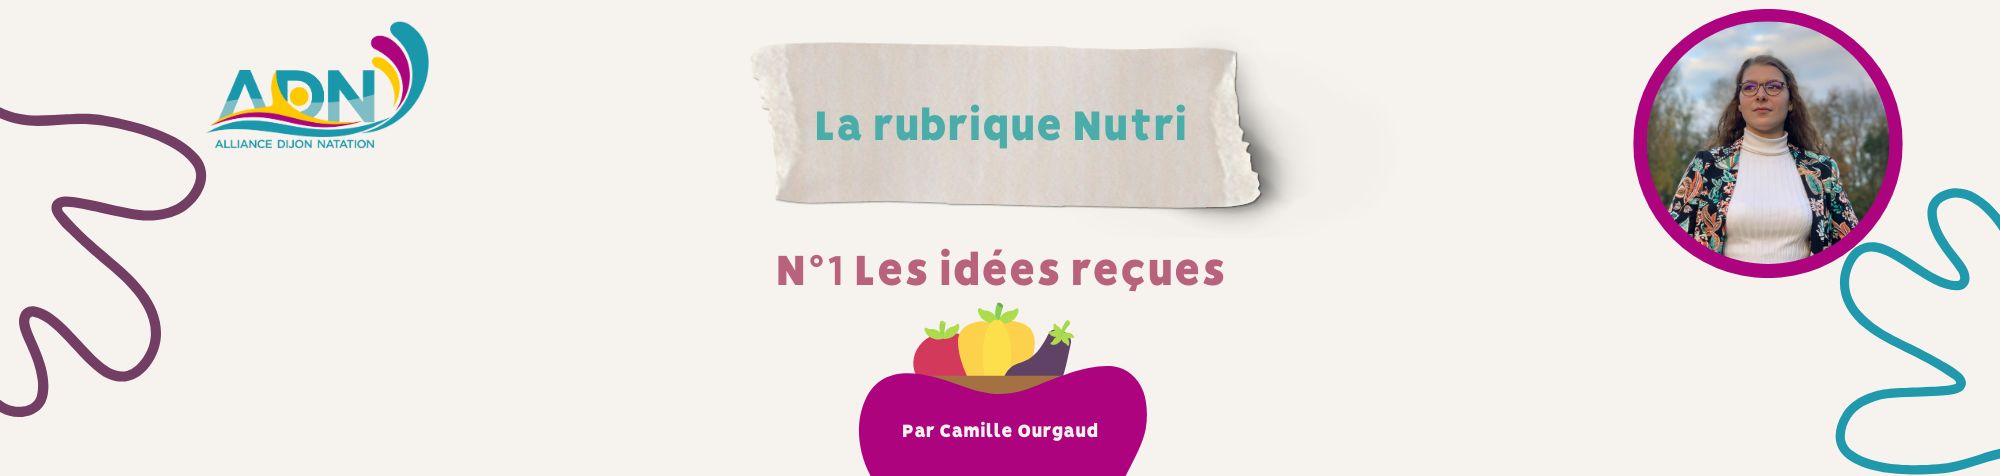 Rubrique nutri site